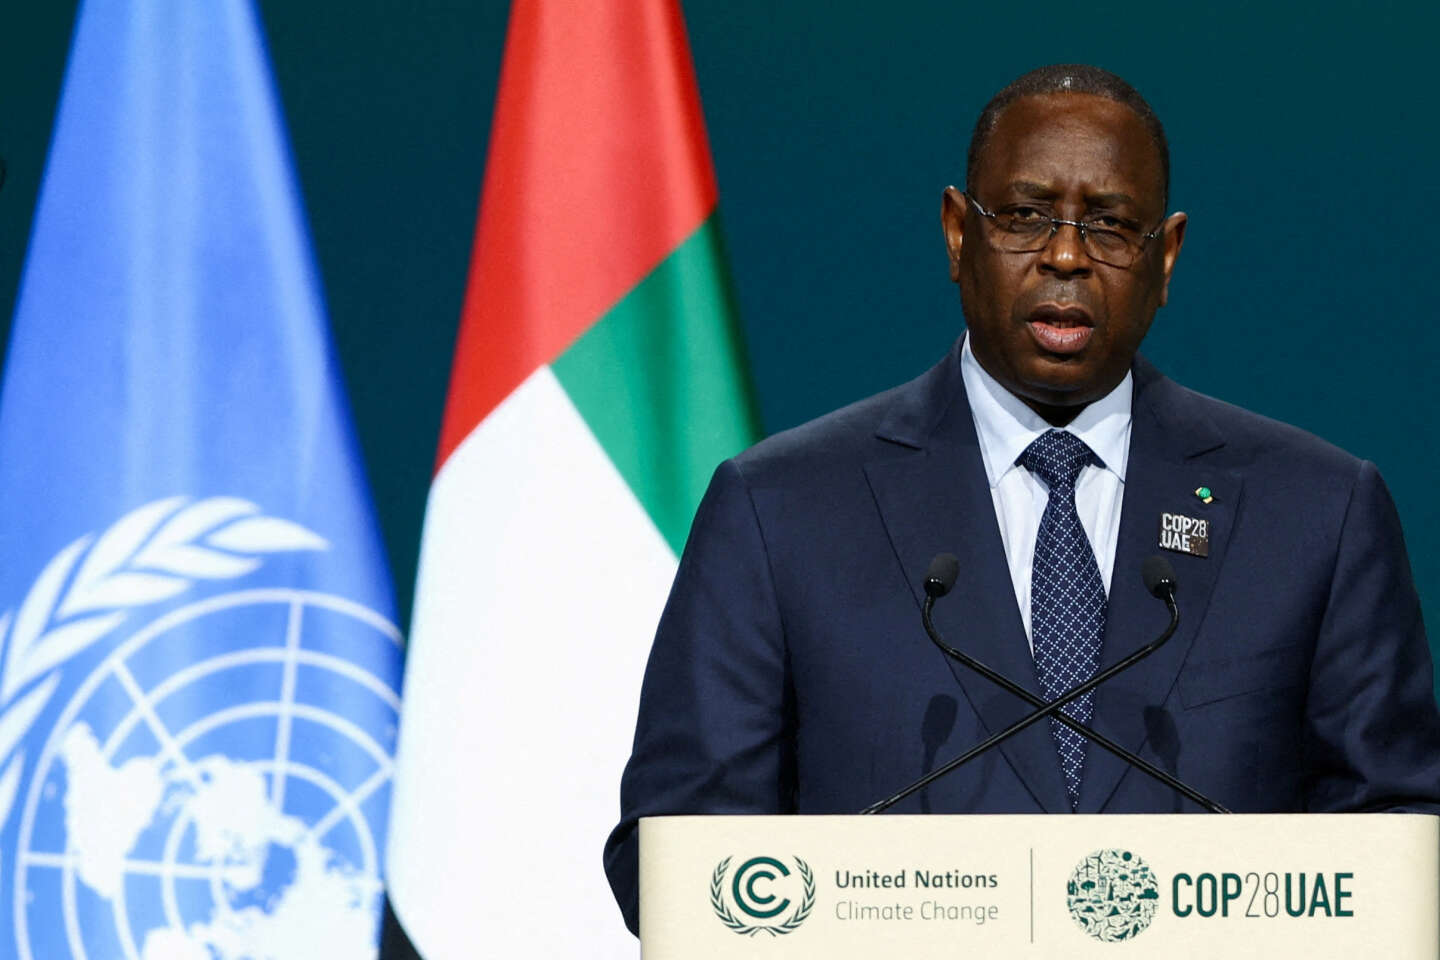 In Senegal kondigde president Macky Sall het uitstel van de presidentsverkiezingen voor onbepaalde tijd aan